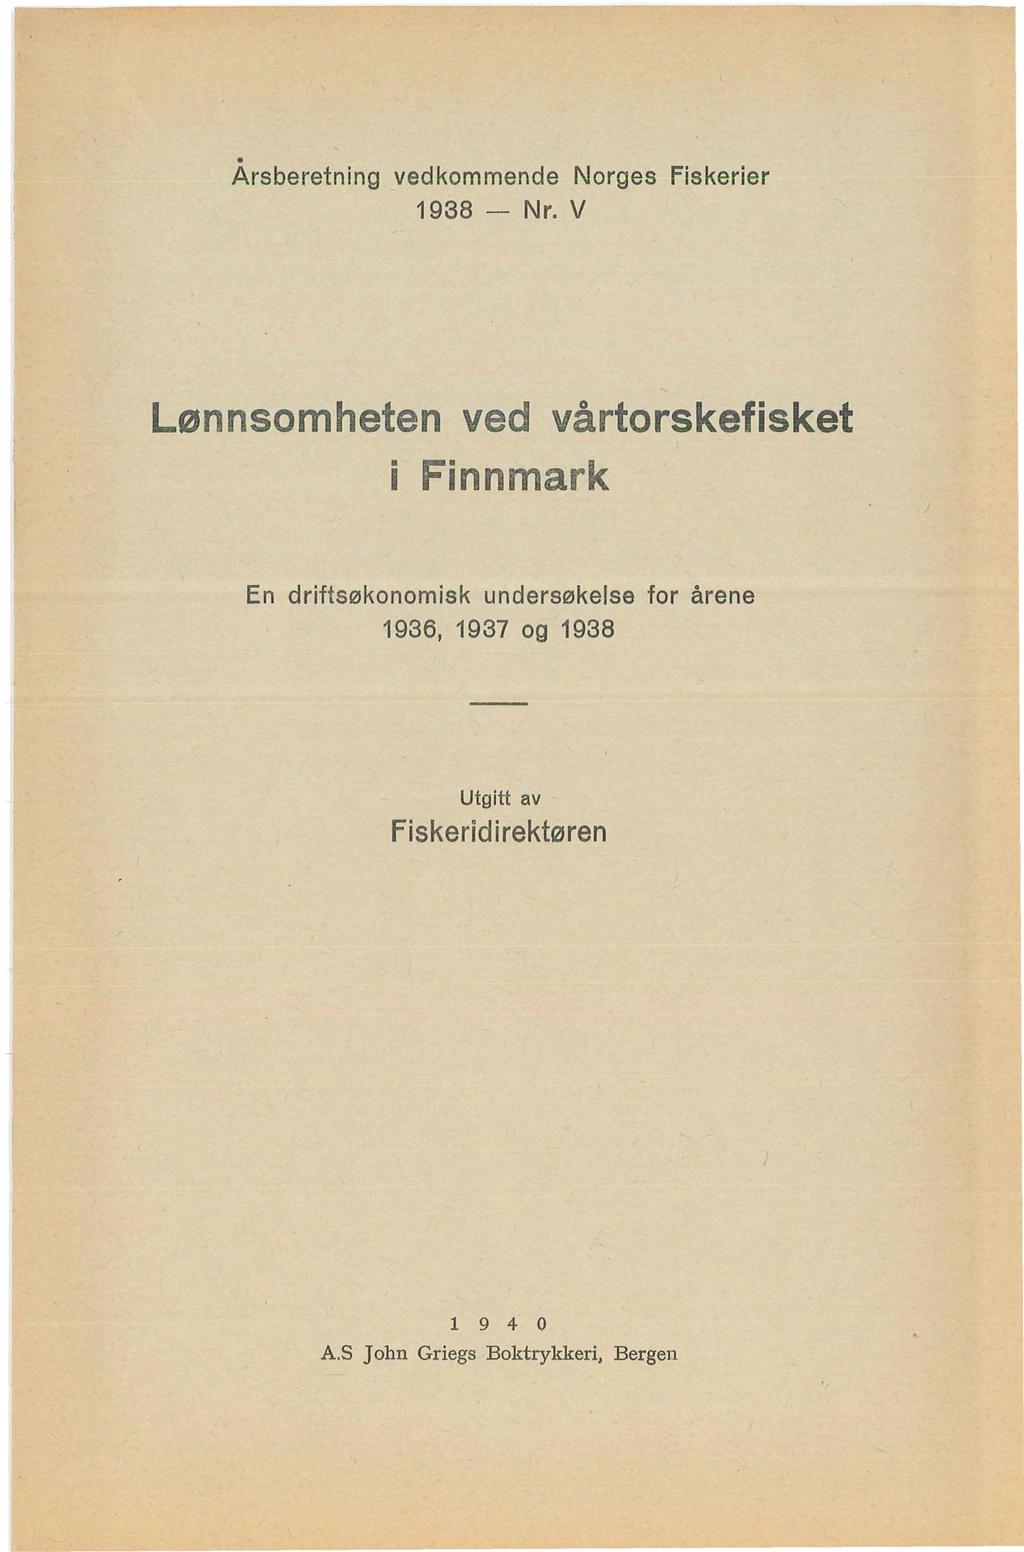 . Arsberetning vedkommende Norges Fiskerier 1938 - Nr.